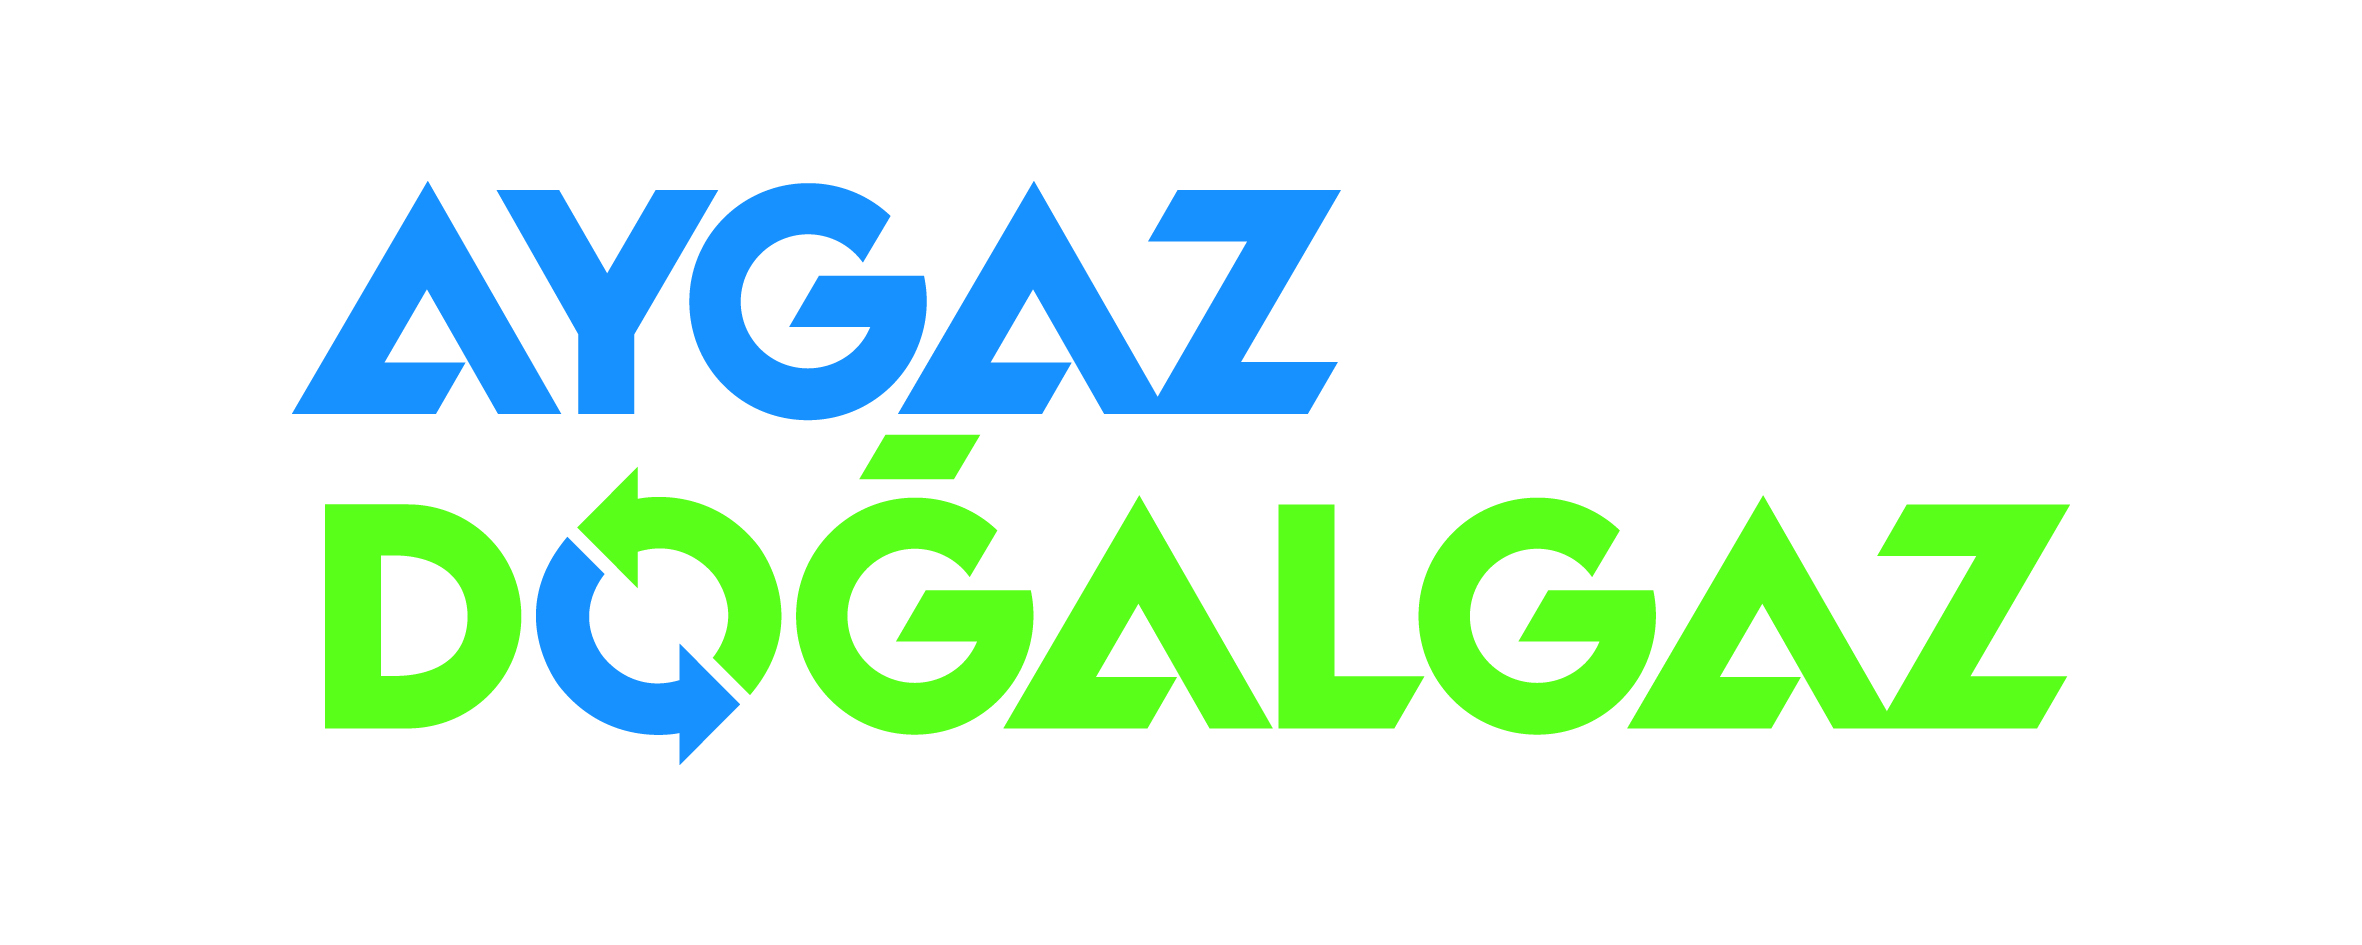 Aygaz Doğal Gaz - Aygaz, Transparent background PNG HD thumbnail